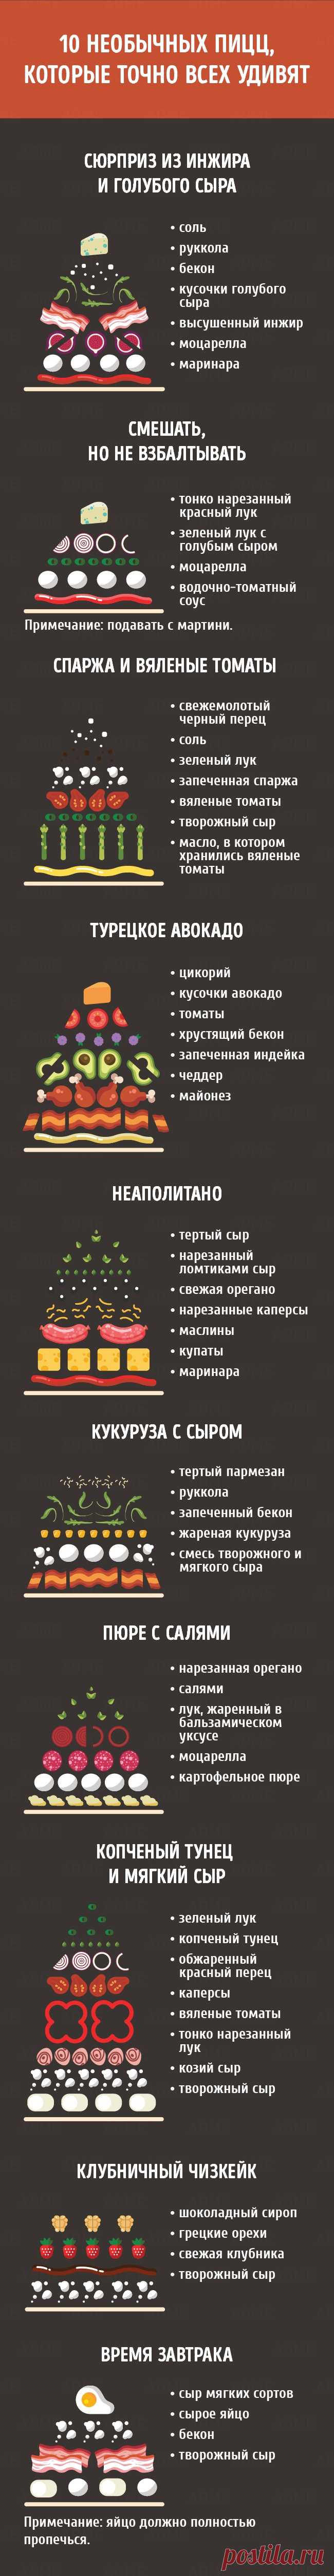 Гид по кухне и готовке от AdMe.ru